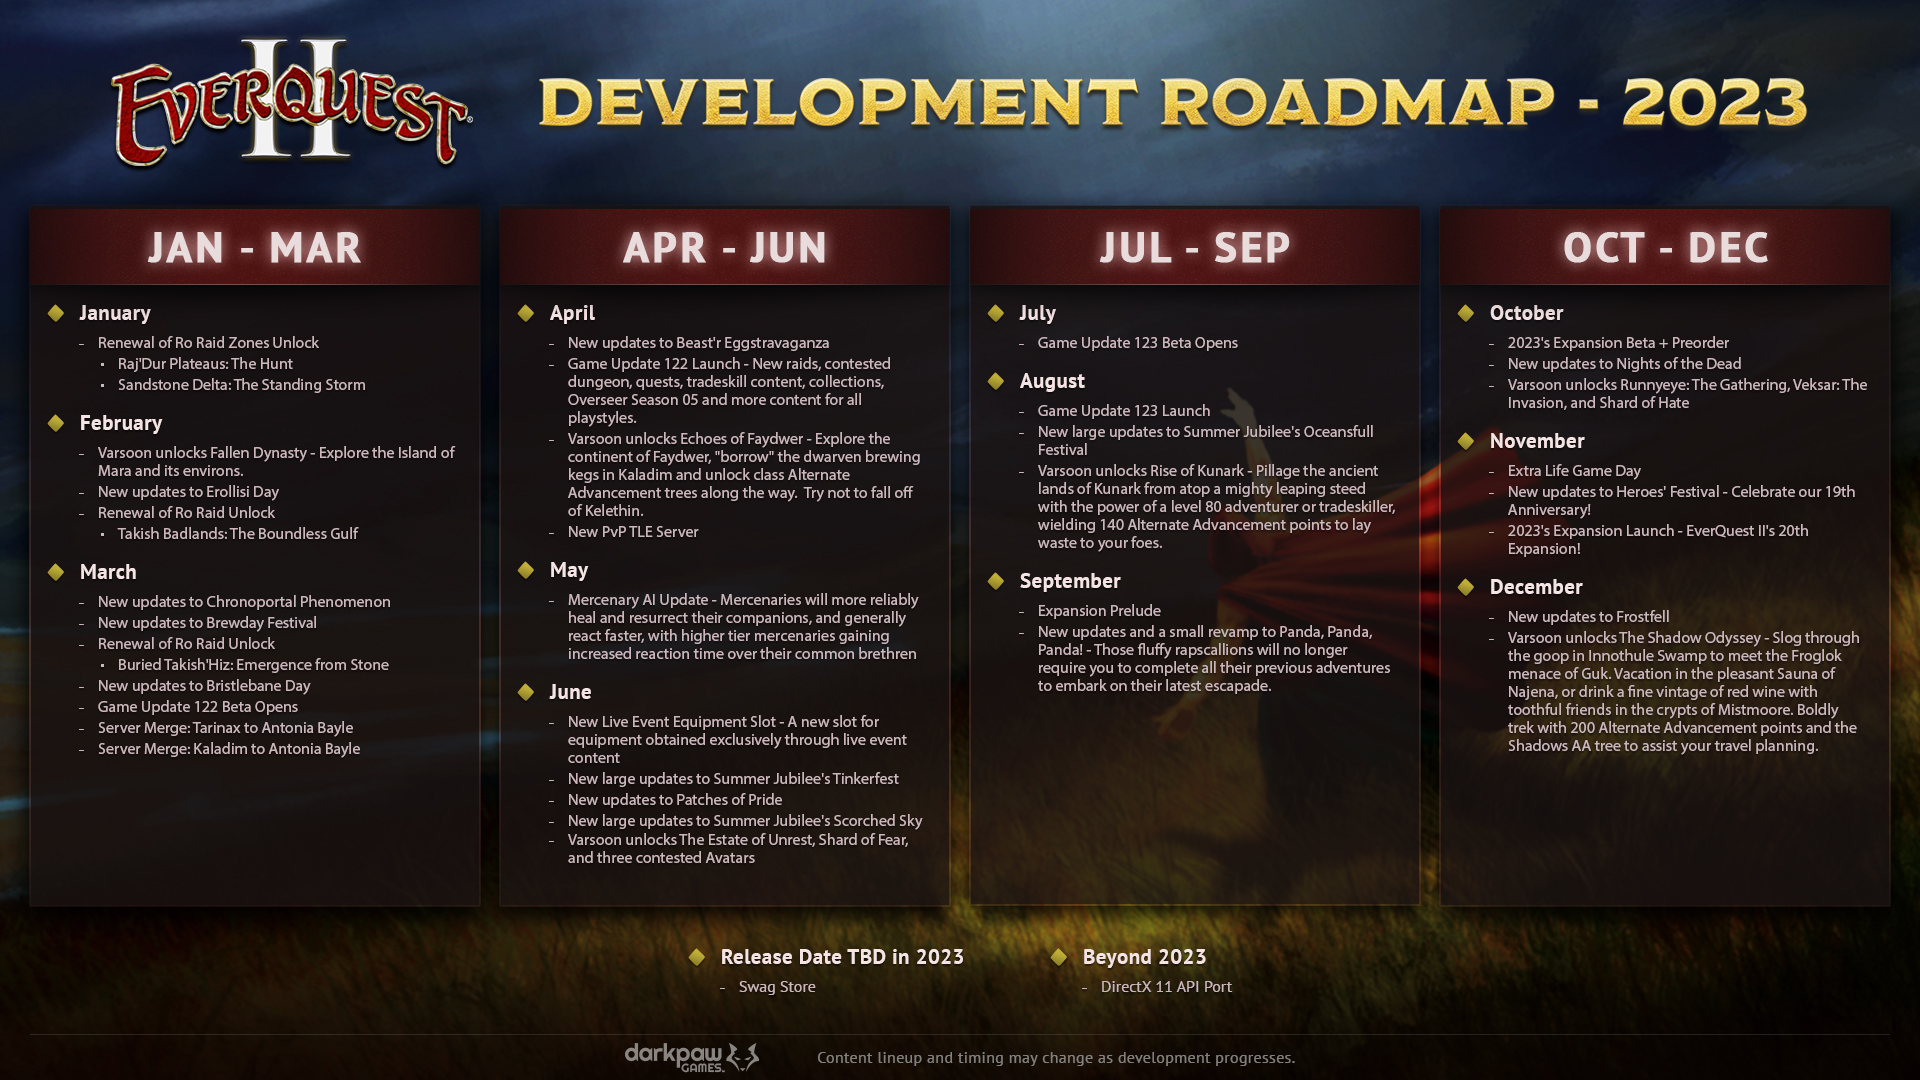 EverQuest II 2023 Roadmap